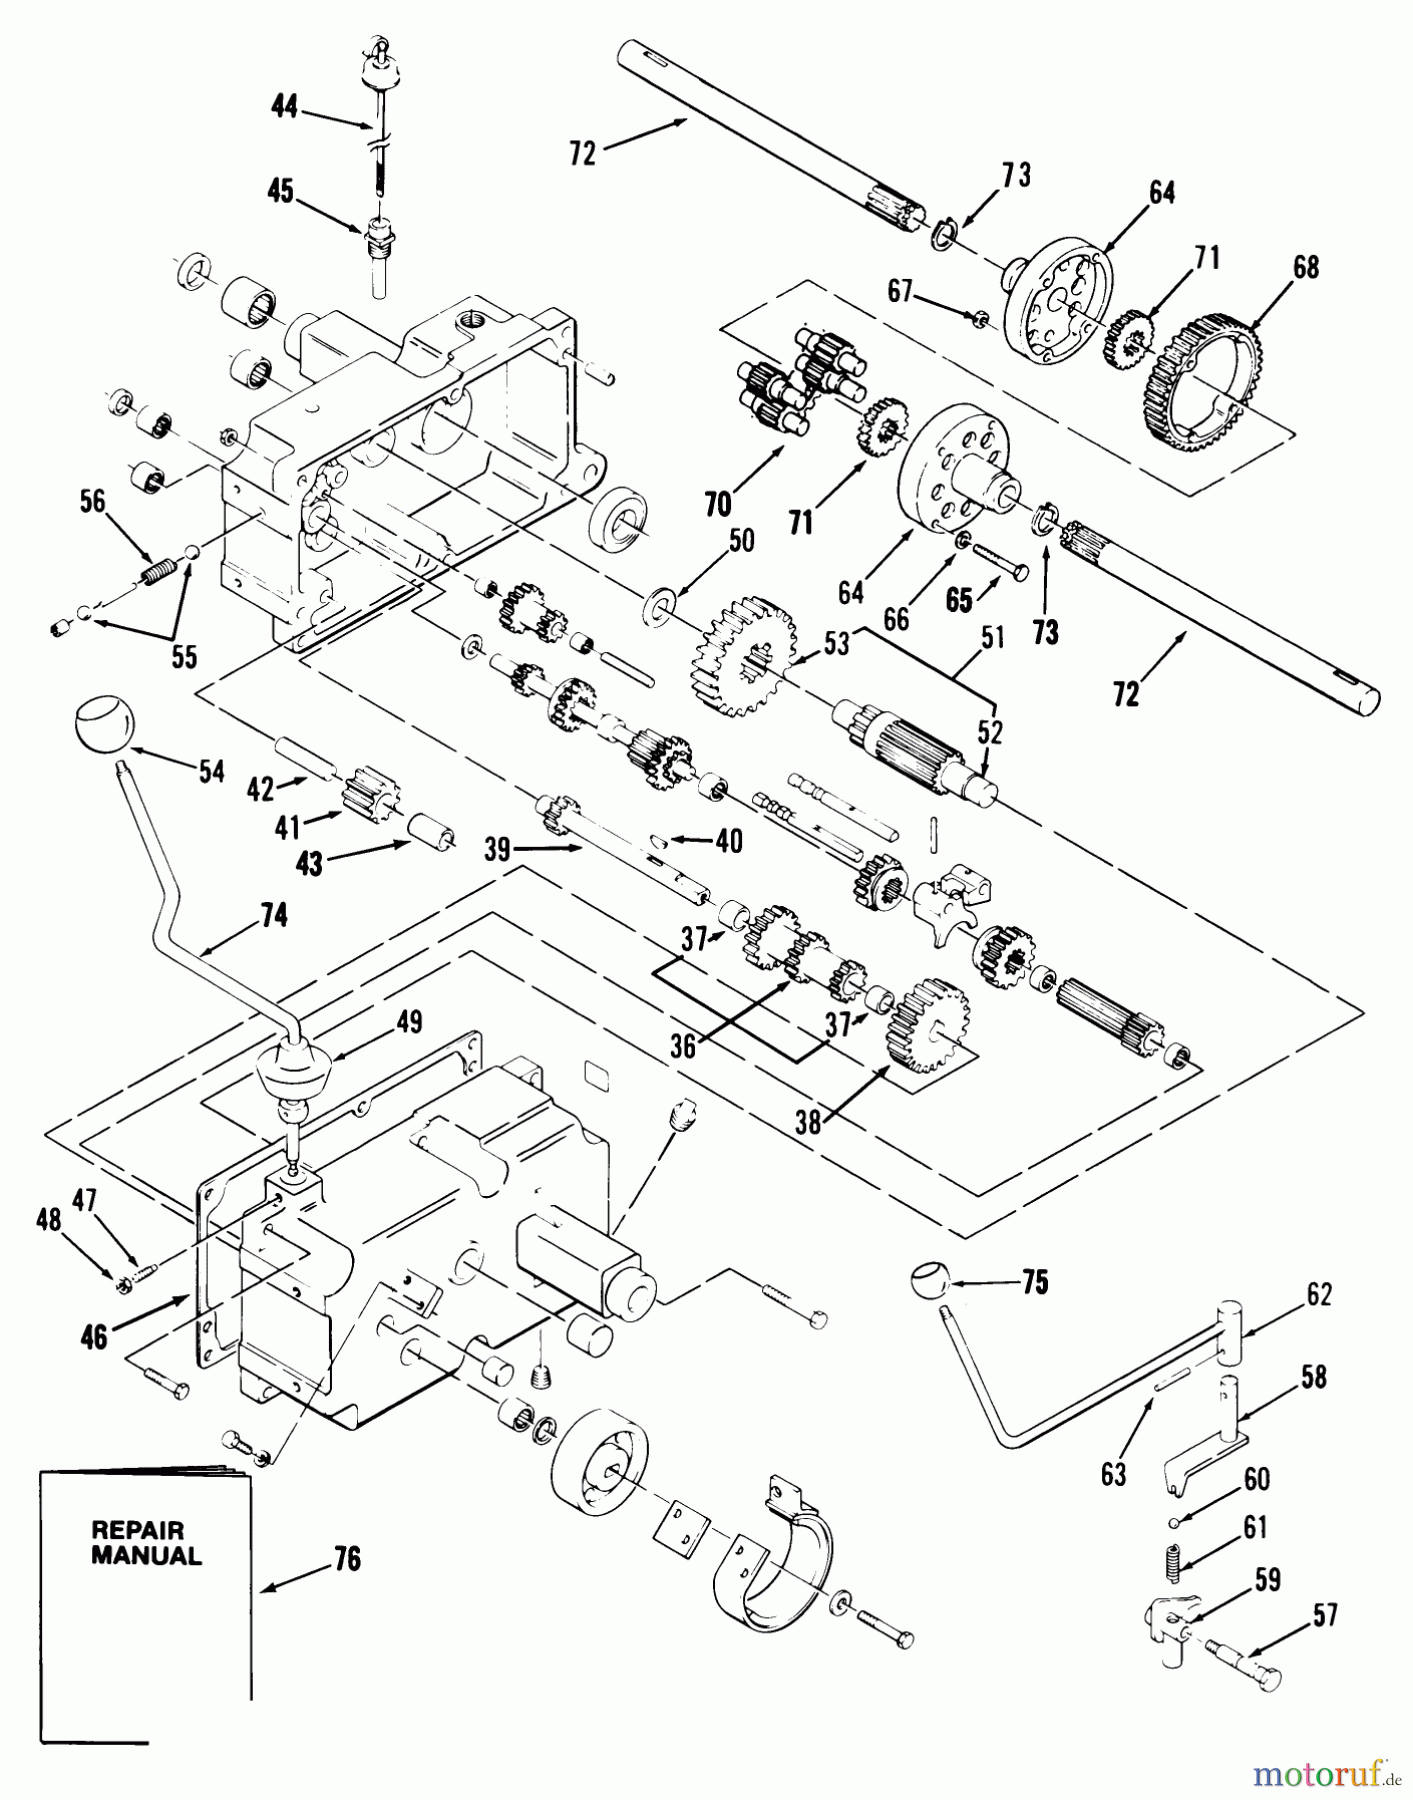  Toro Neu Mowers, Lawn & Garden Tractor Seite 1 21-12K806 (312-8) - Toro 312-8 Garden Tractor, 1989 MECHANICAL TRANSMISSION 8-SPEED #2